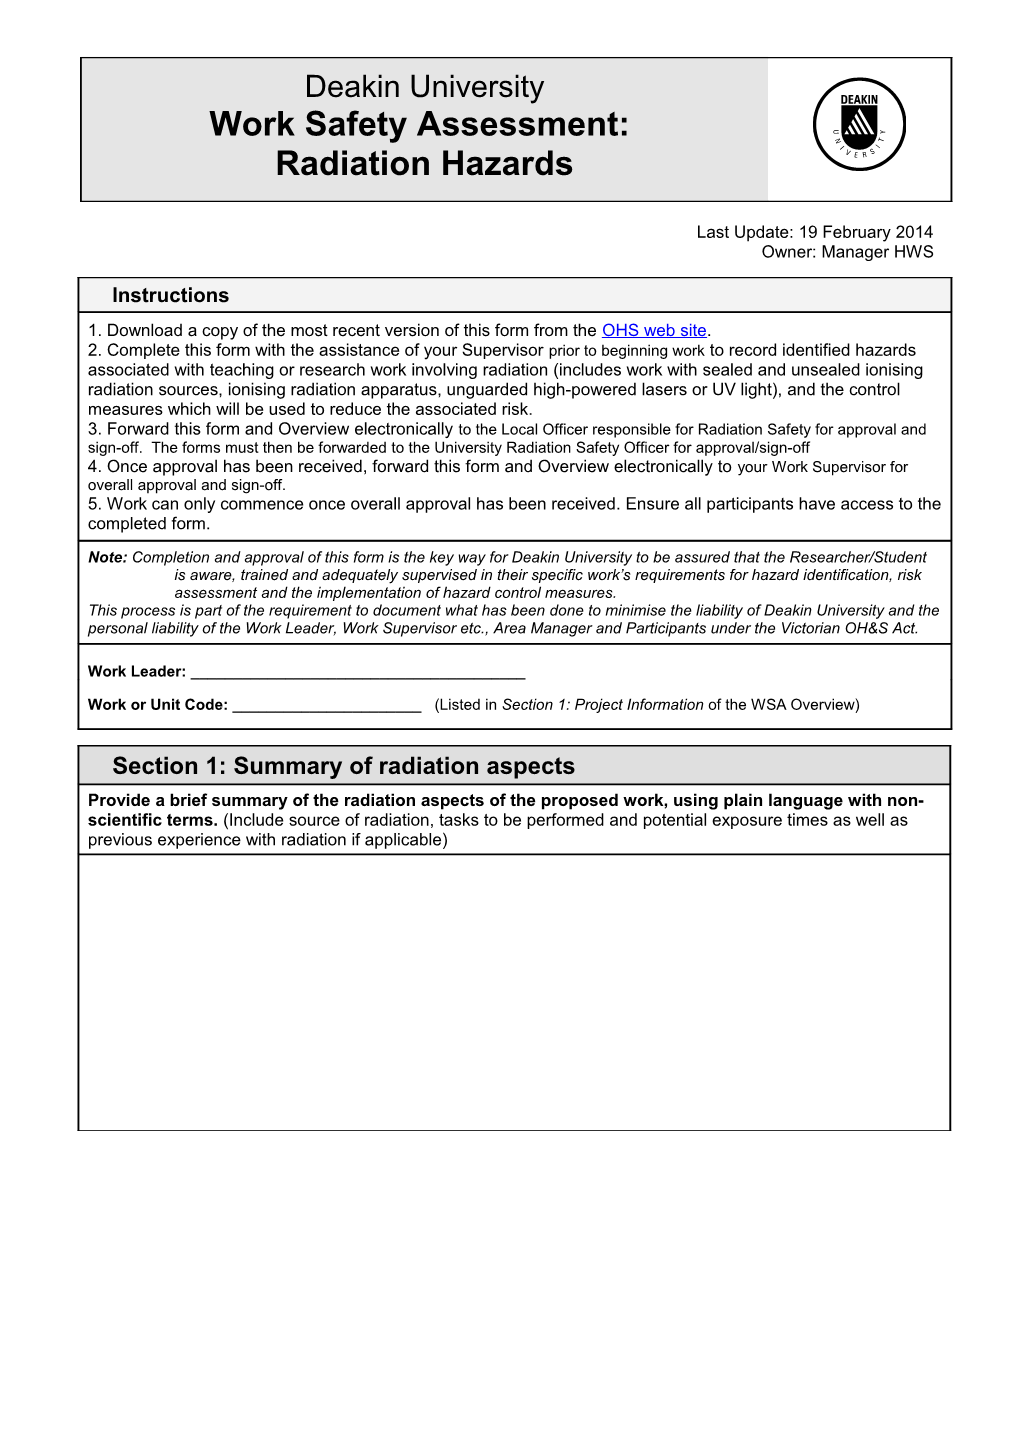 Radiation Hazard Assessmentdeakin Universitypage 1